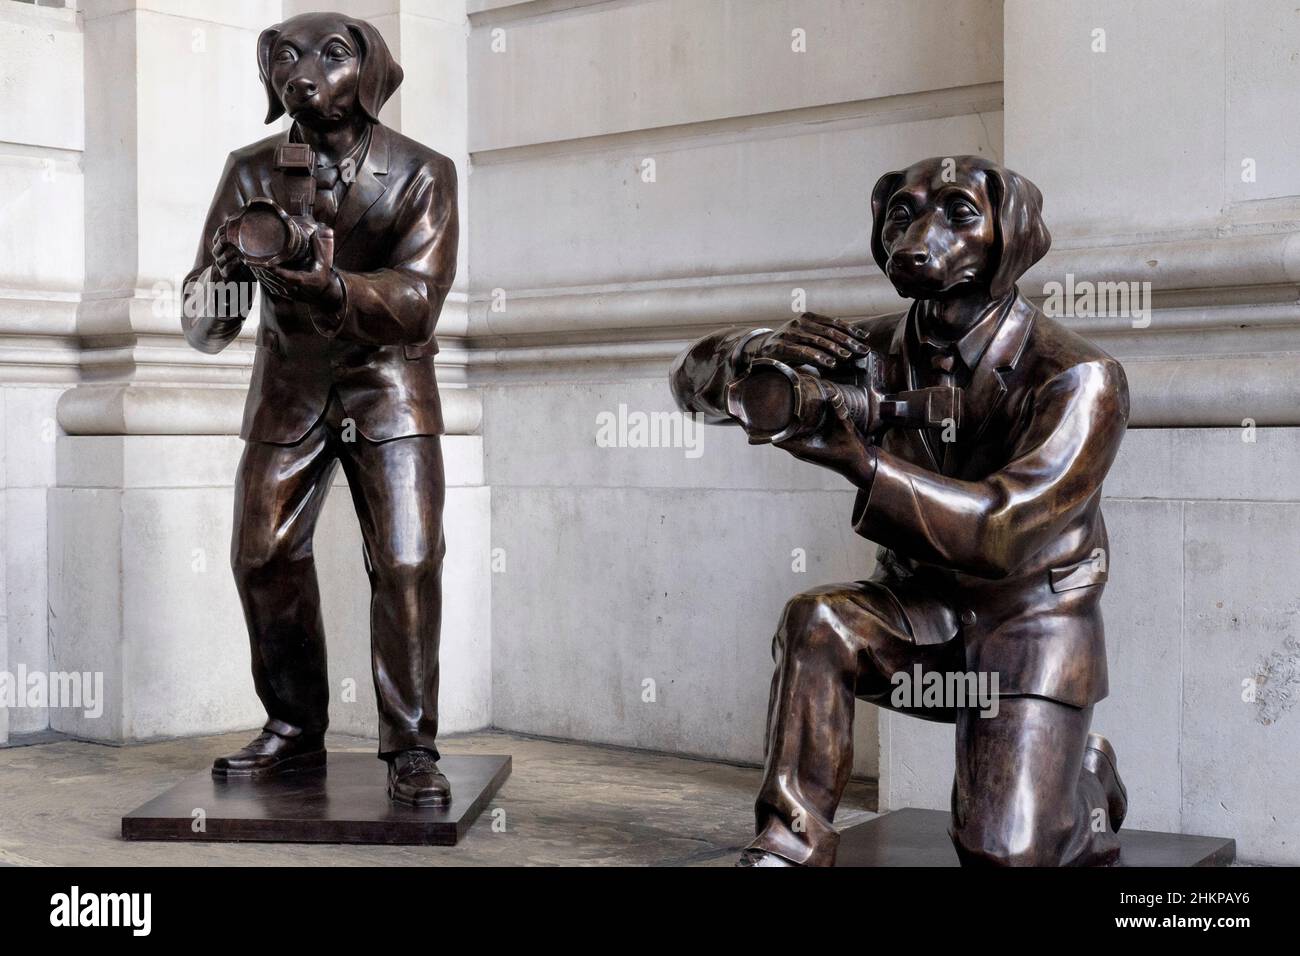 Paparazzi Dogs; esculturas de bronce del dúo artístico Gillie y Marc de Nueva York en exhibición pública a la entrada del Royal Exchange, Londres, Reino Unido. Foto de stock